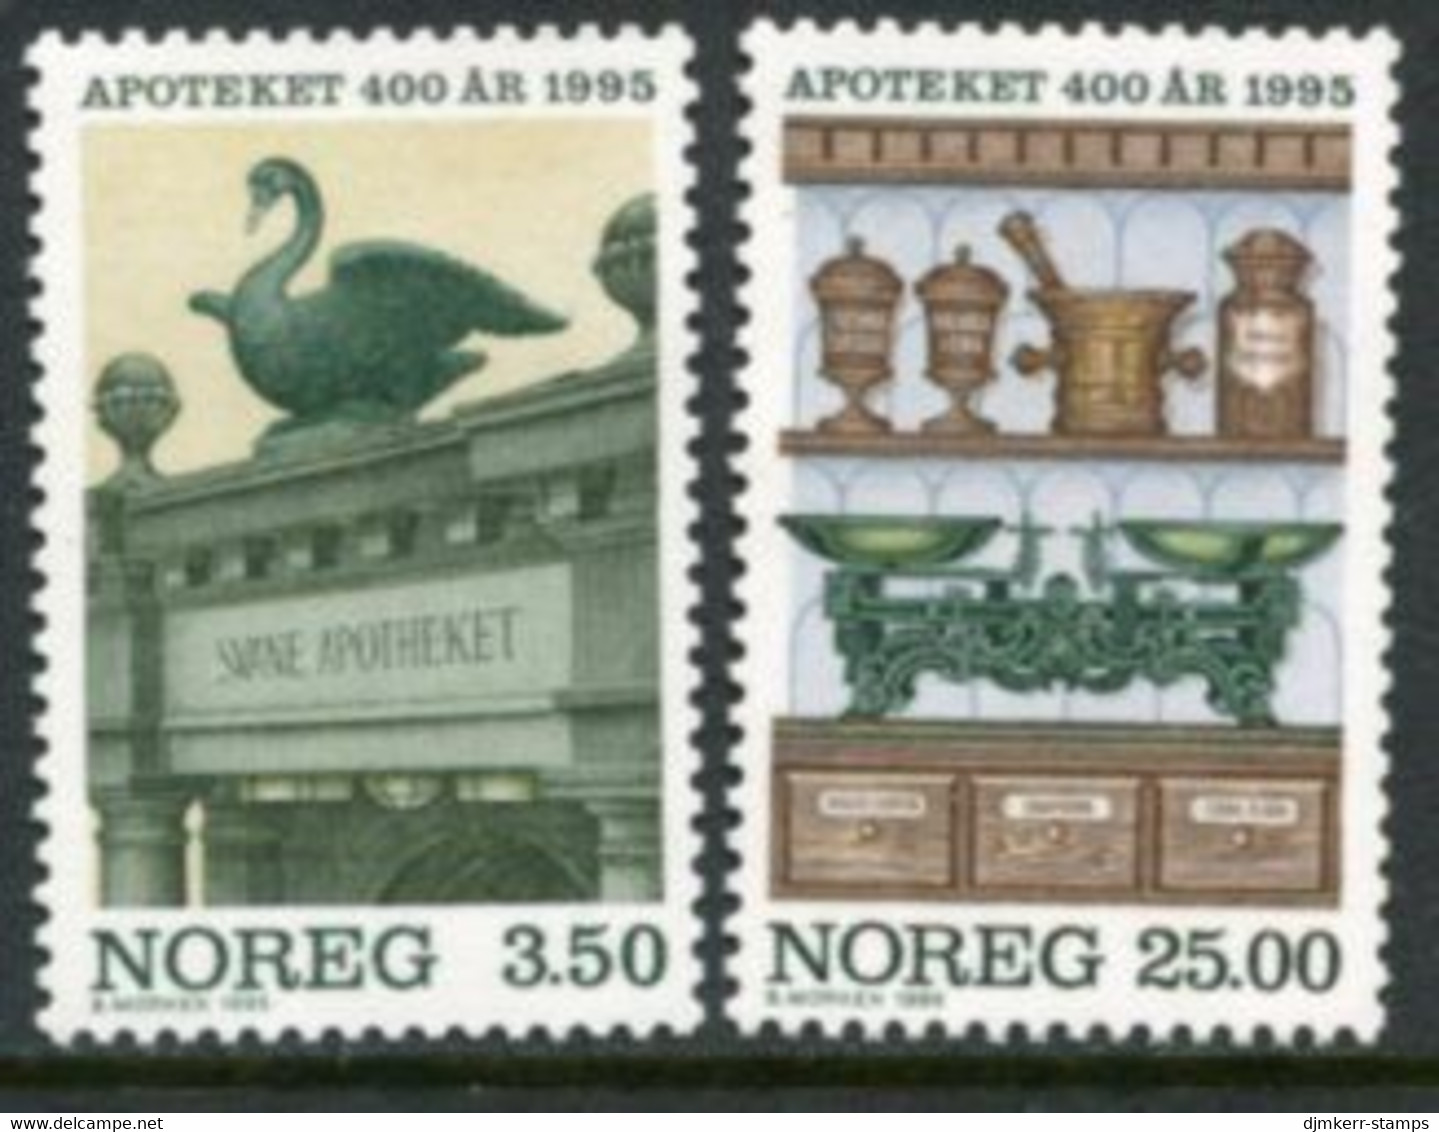 NORWAY 1995 Pharmacies In Norway MNH / **.   Michel 1172-73 - Ungebraucht